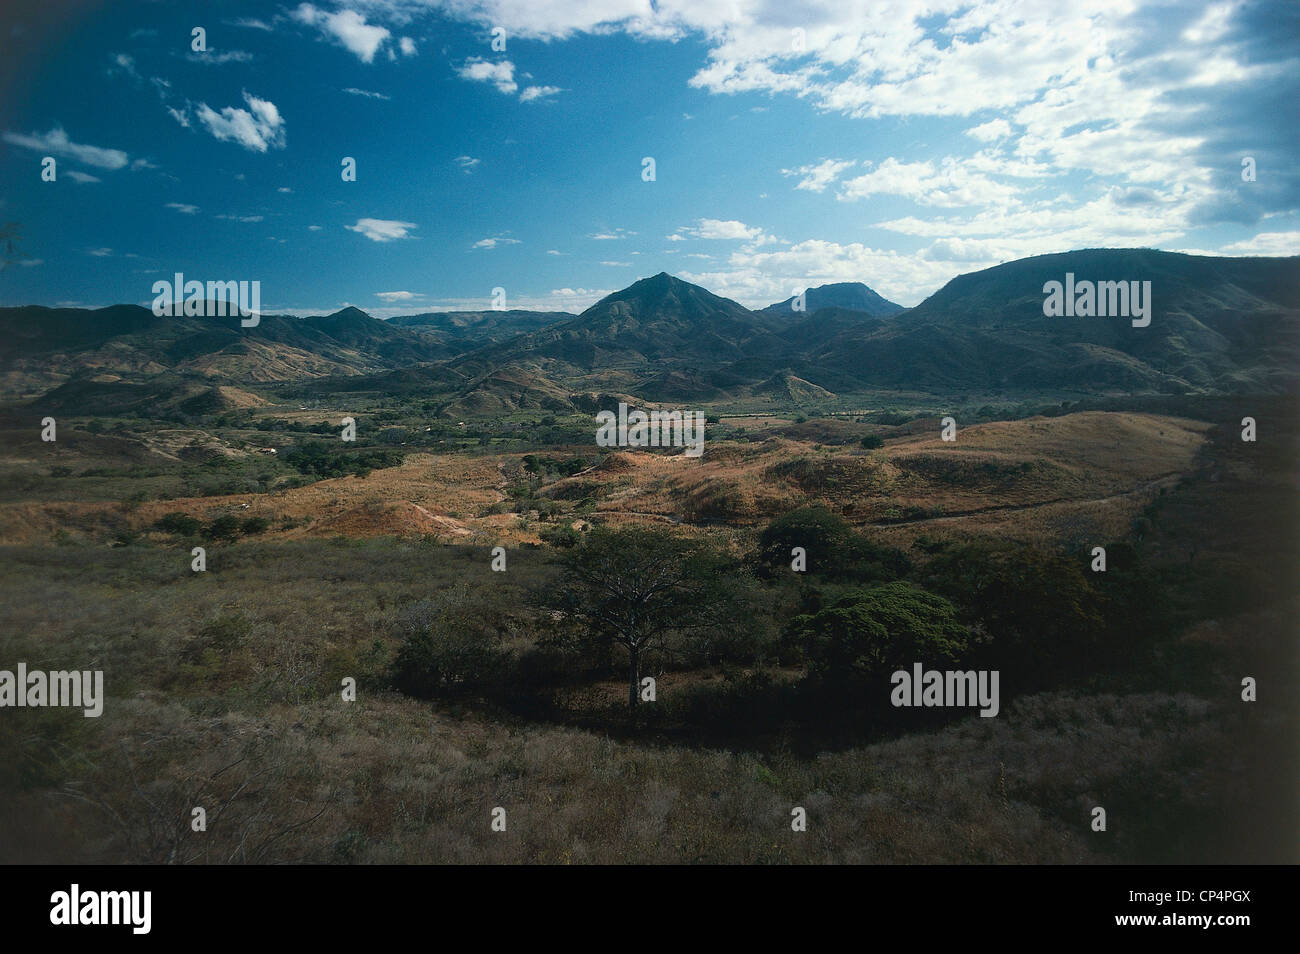 Honduras - Francisco Morazan in Landscape Stock Photo